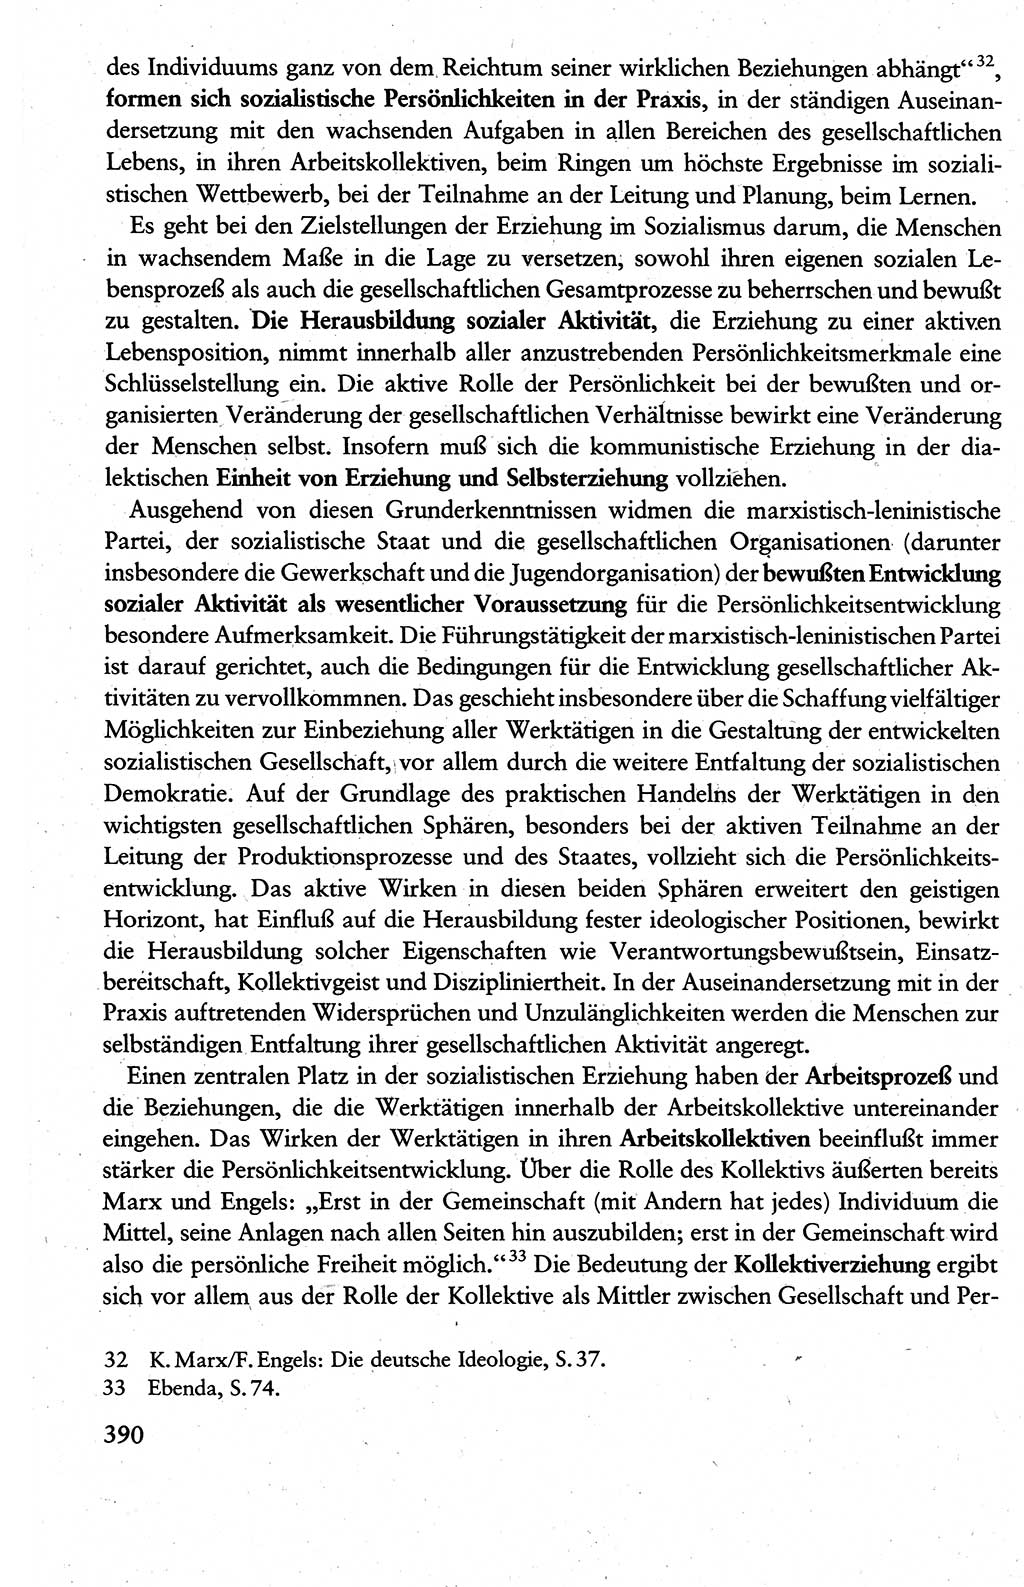 Wissenschaftlicher Kommunismus [Deutsche Demokratische Republik (DDR)], Lehrbuch für das marxistisch-leninistische Grundlagenstudium 1983, Seite 390 (Wiss. Komm. DDR Lb. 1983, S. 390)